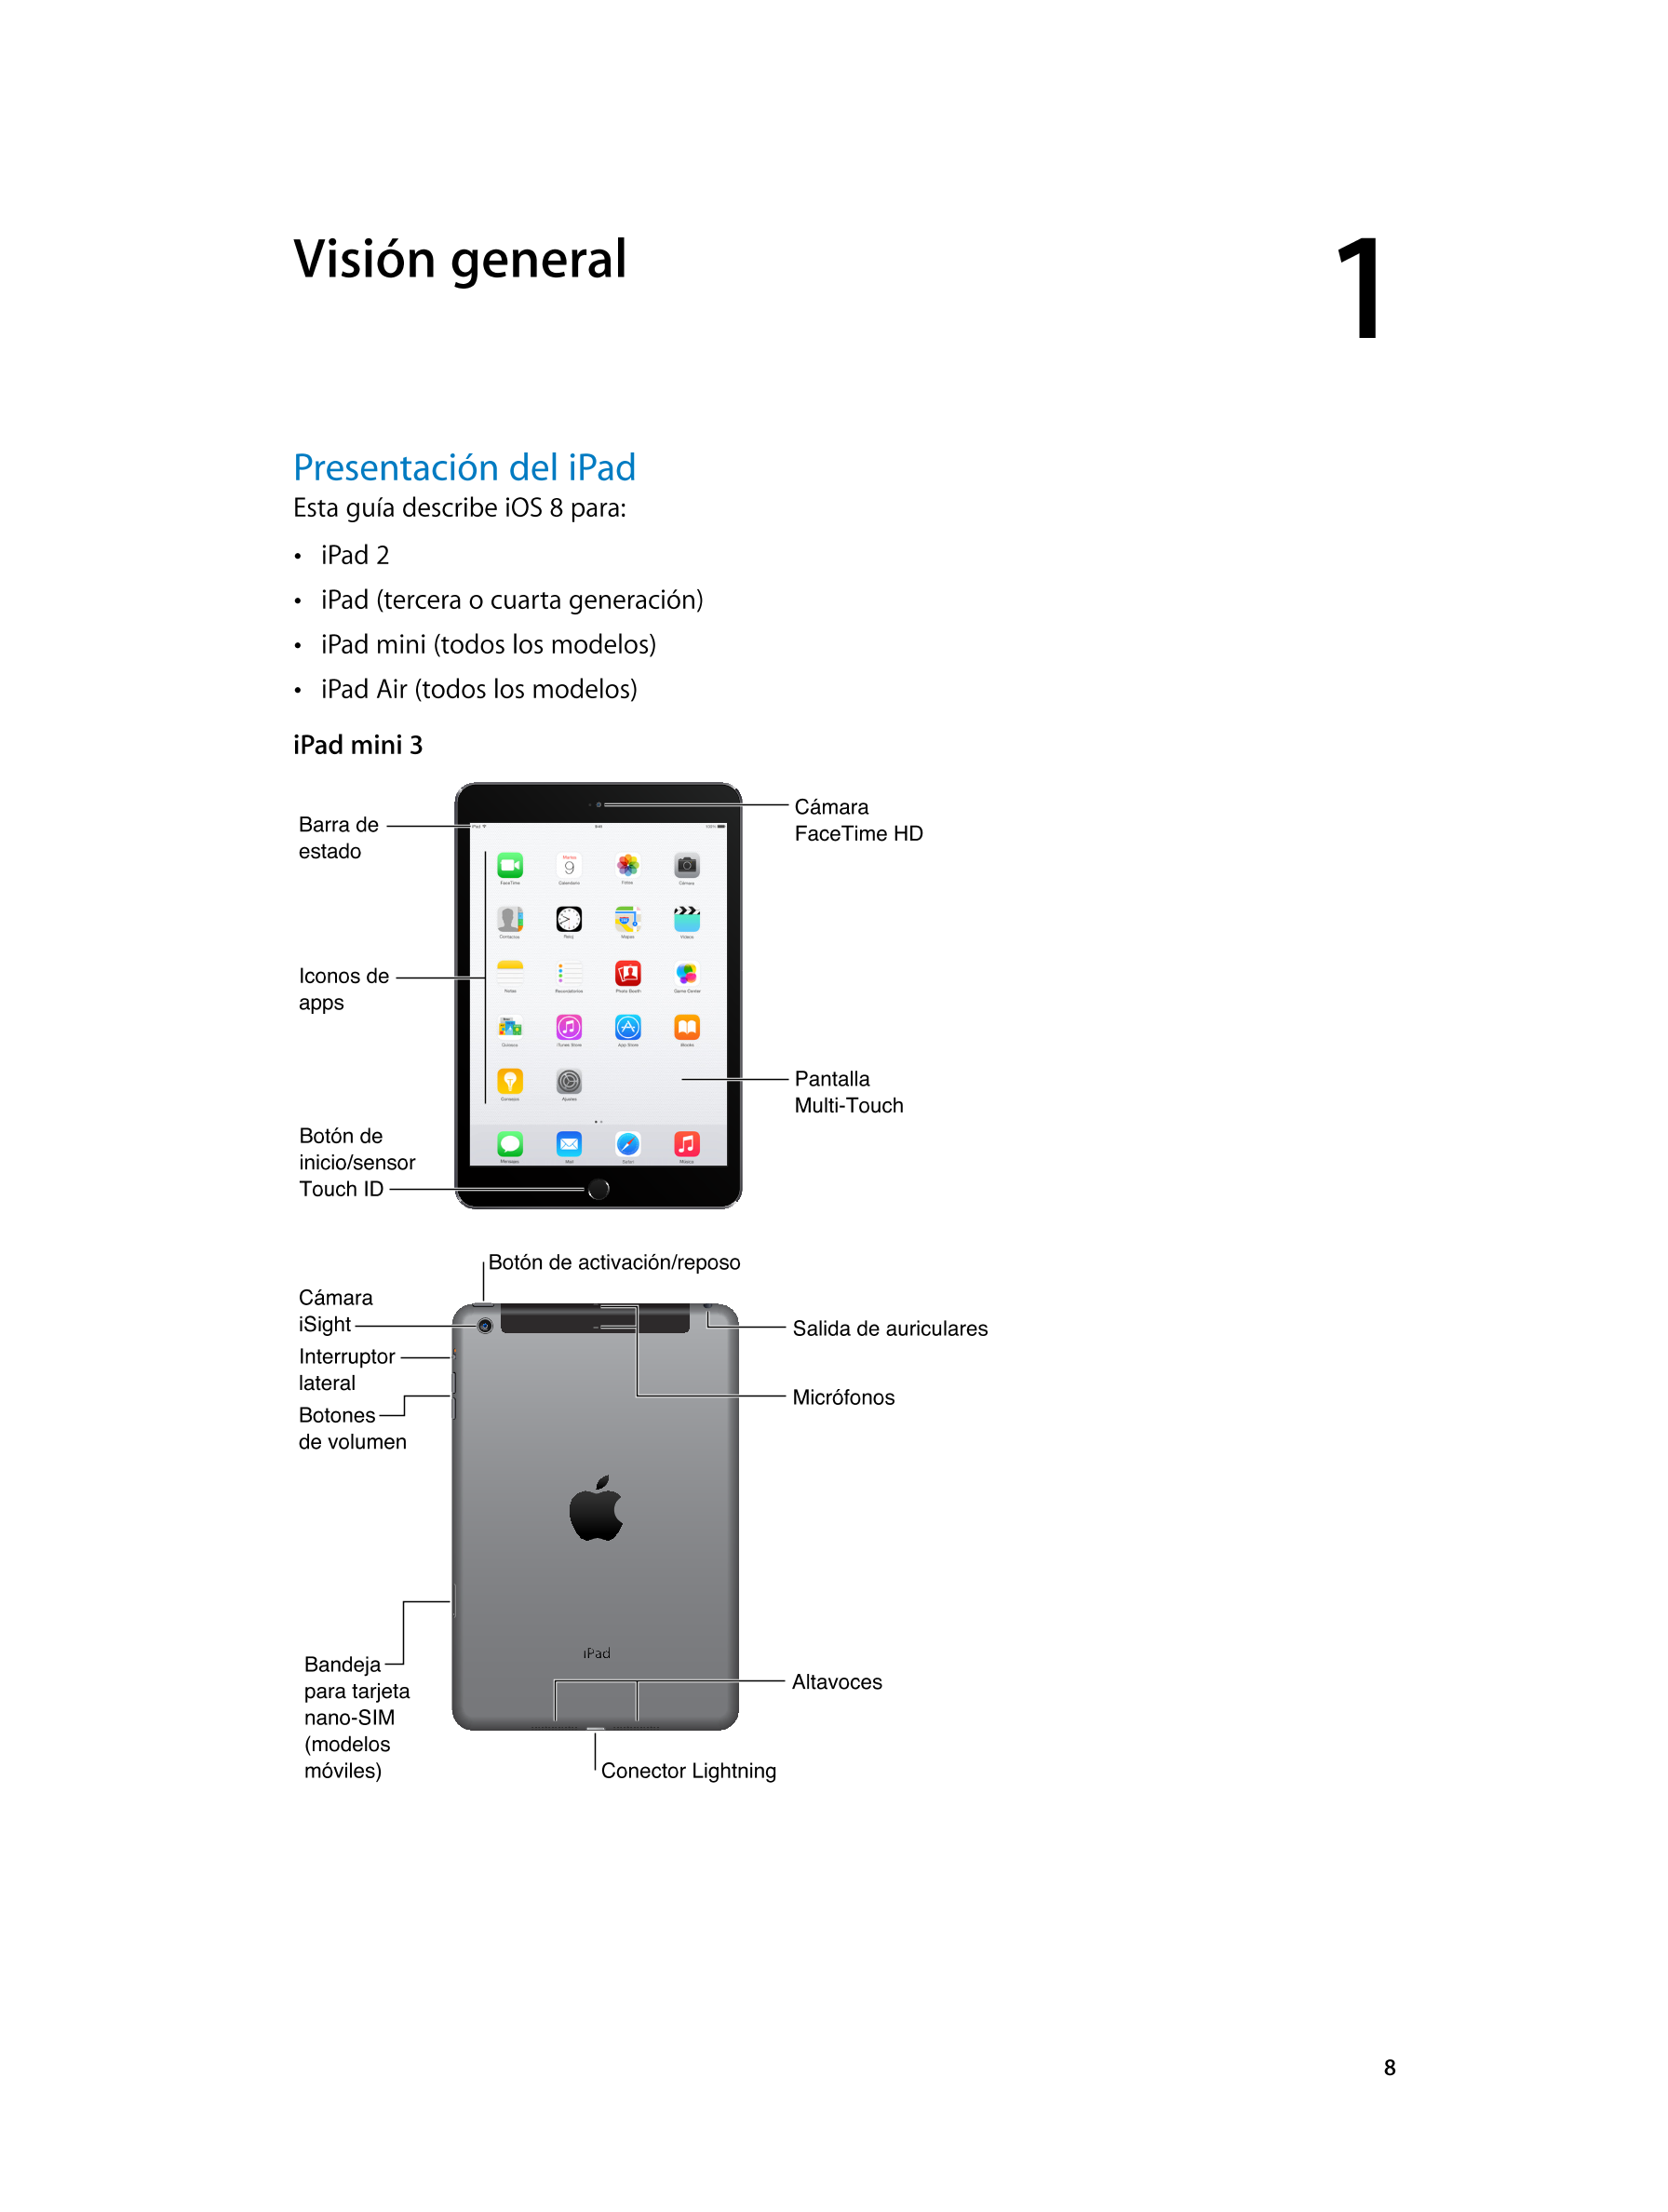   Visión general 1         
Presentación del iPad
Esta guía describe iOS 8 para: 
•  iPad  2
•  iPad (tercera o cuarta generació